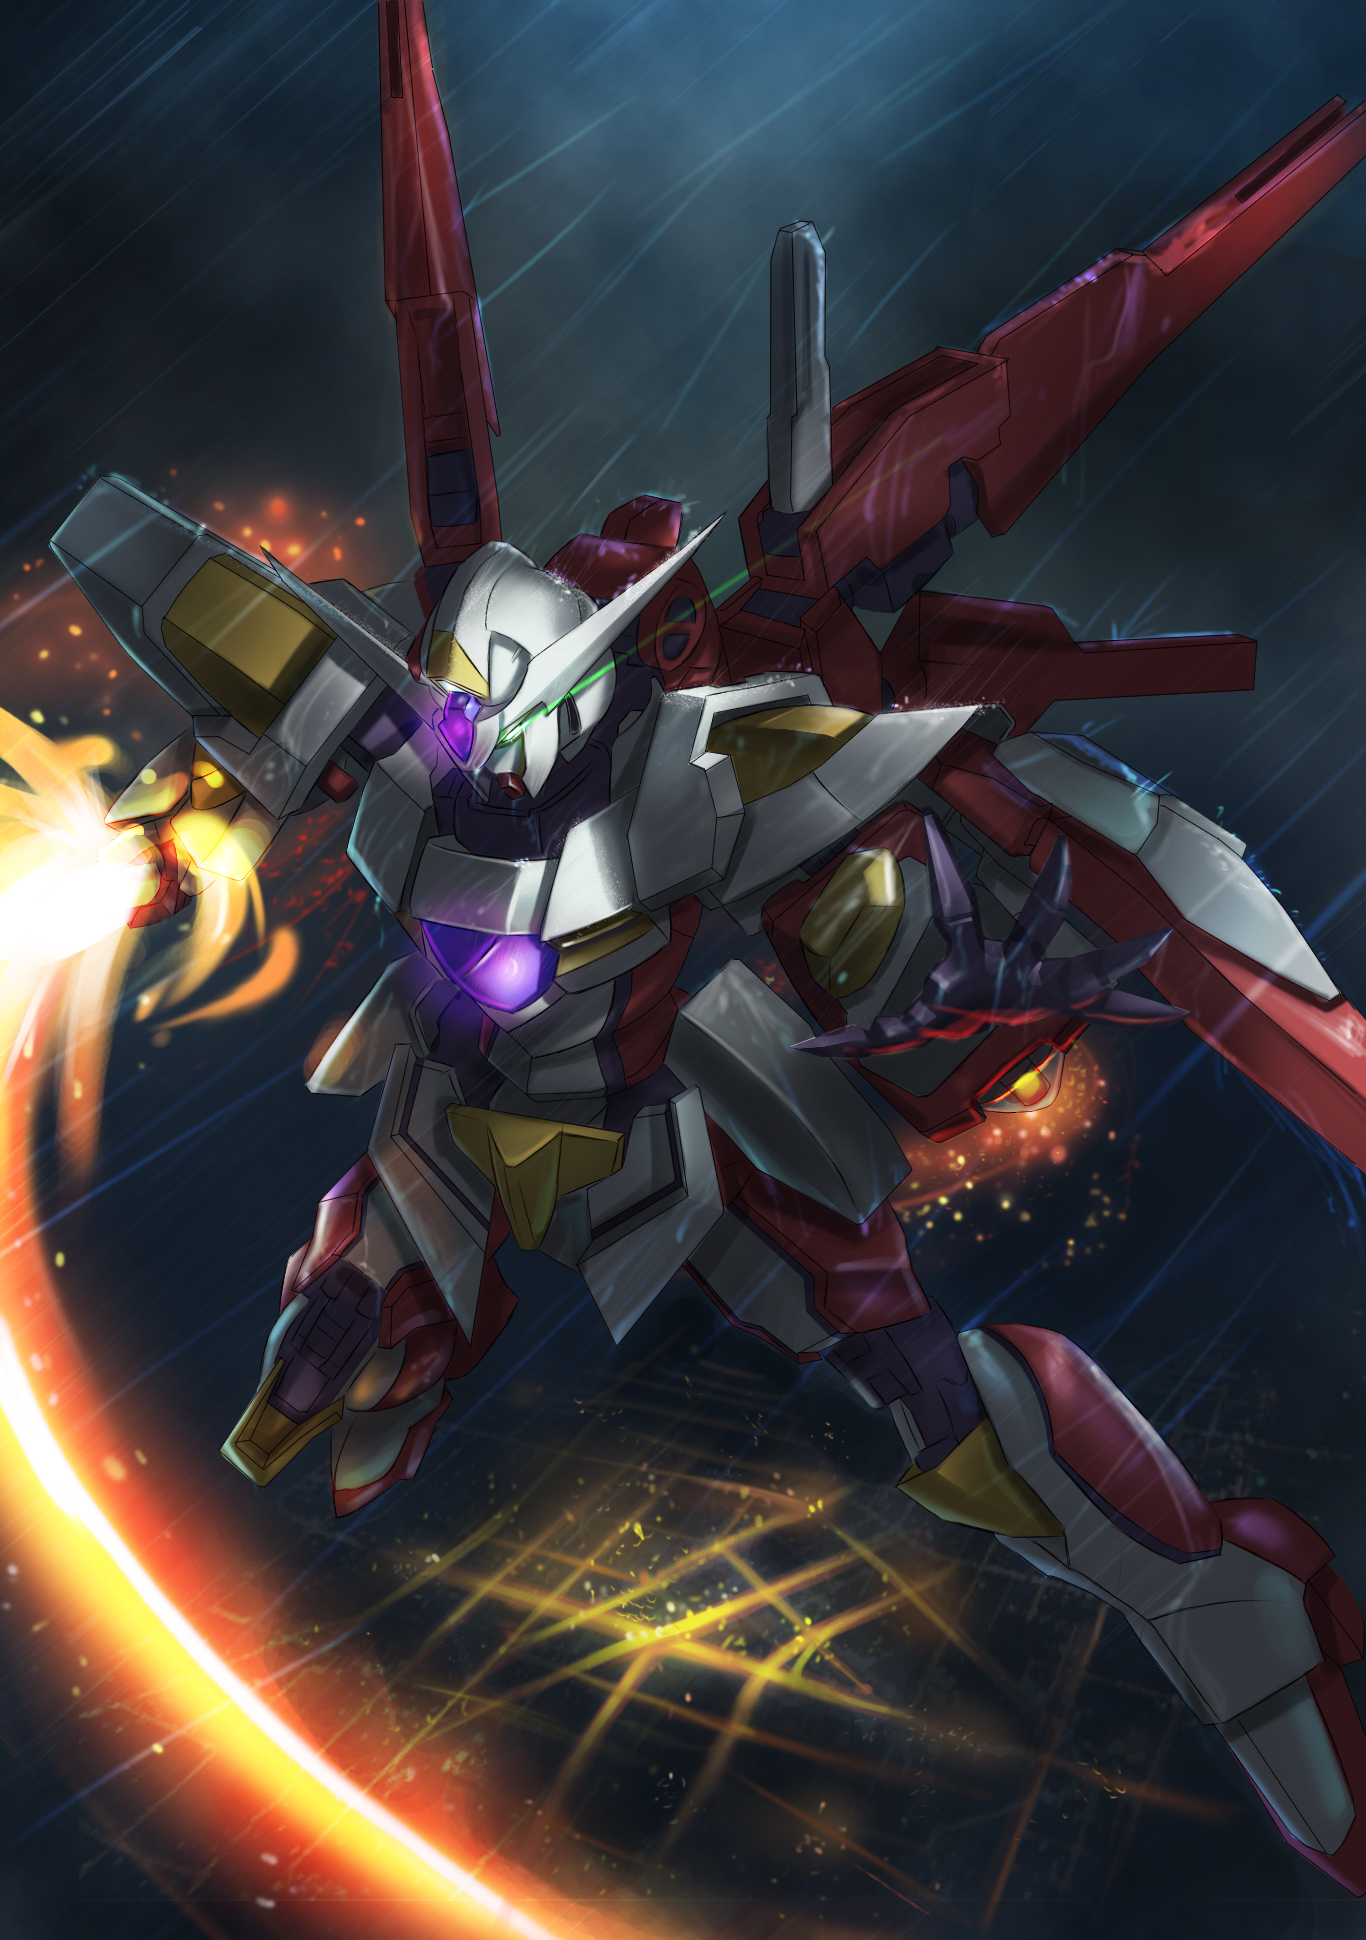 Reborns Gundam Mobile Suit Gundam 00 Anime Mechs Gundam Super Robot Wars Artwork Digital Art Fan Art 1366x1940